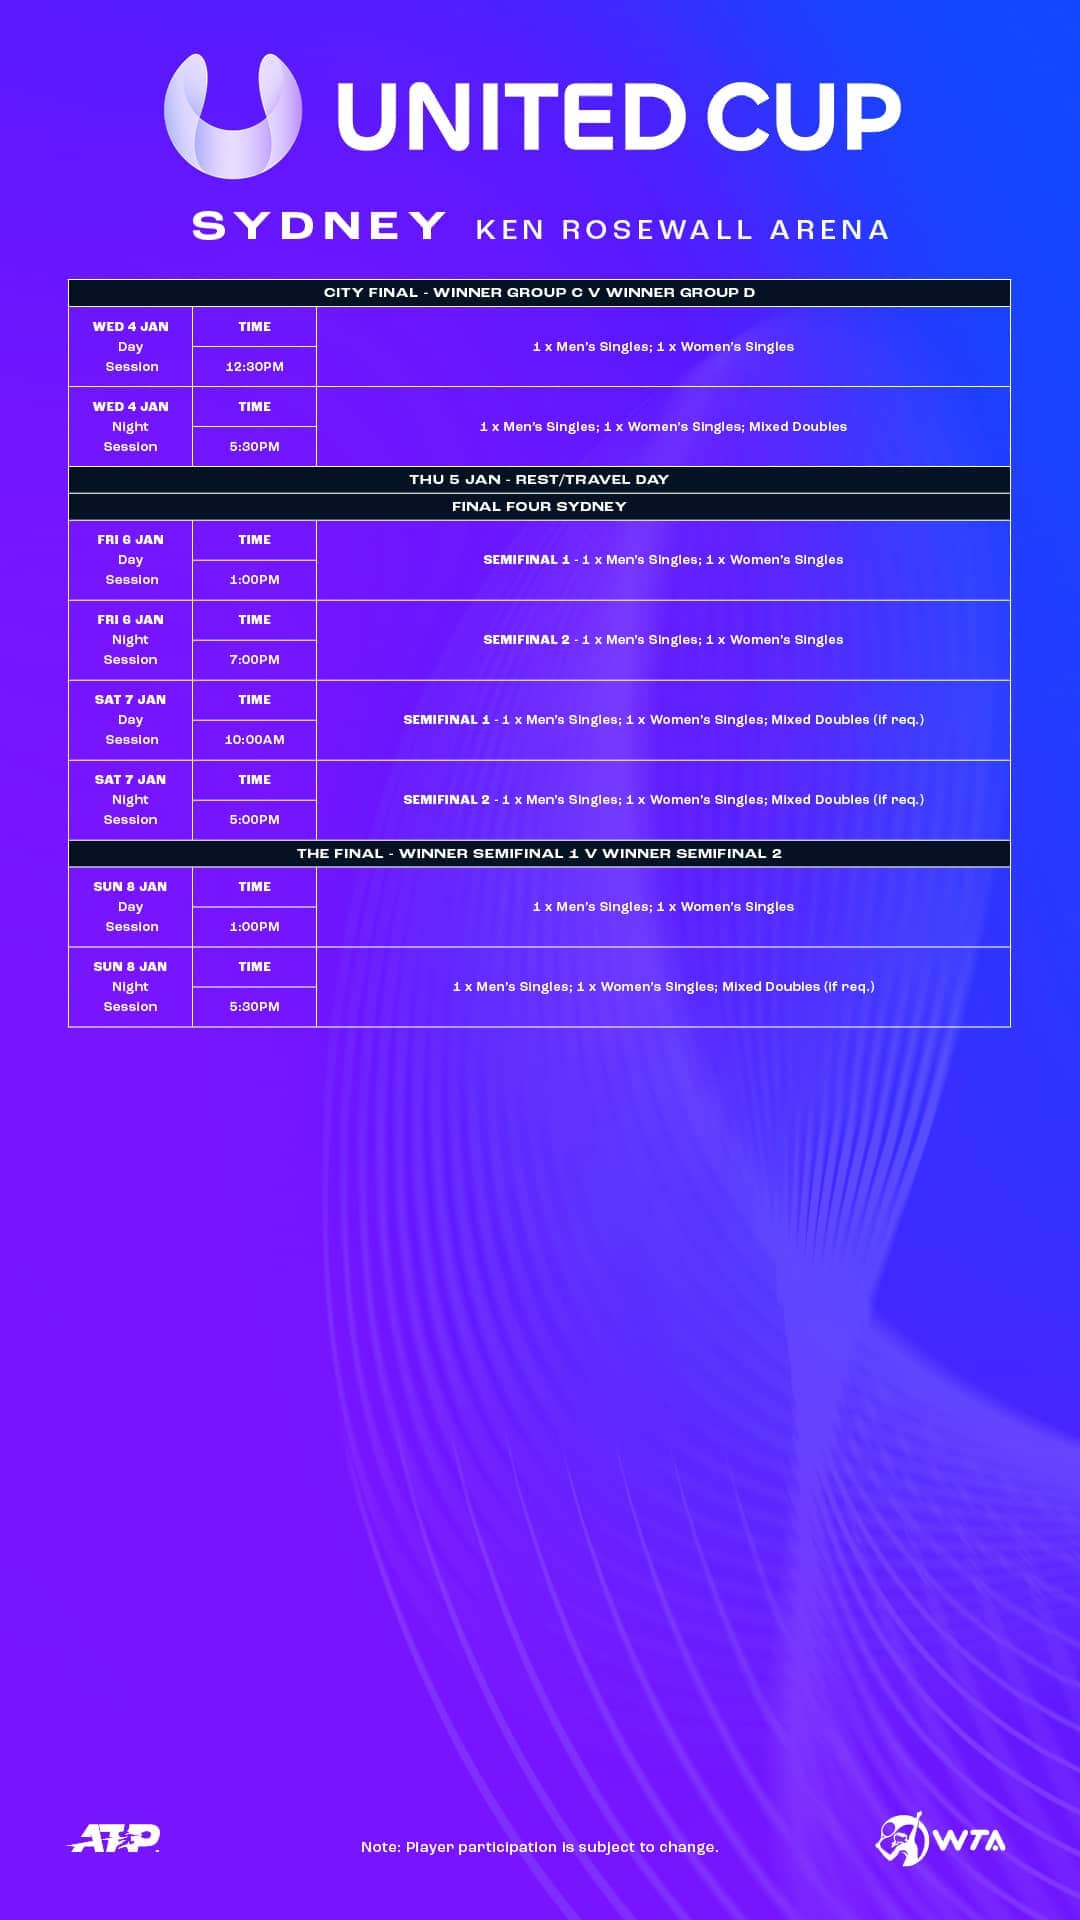 Sydney match schedule